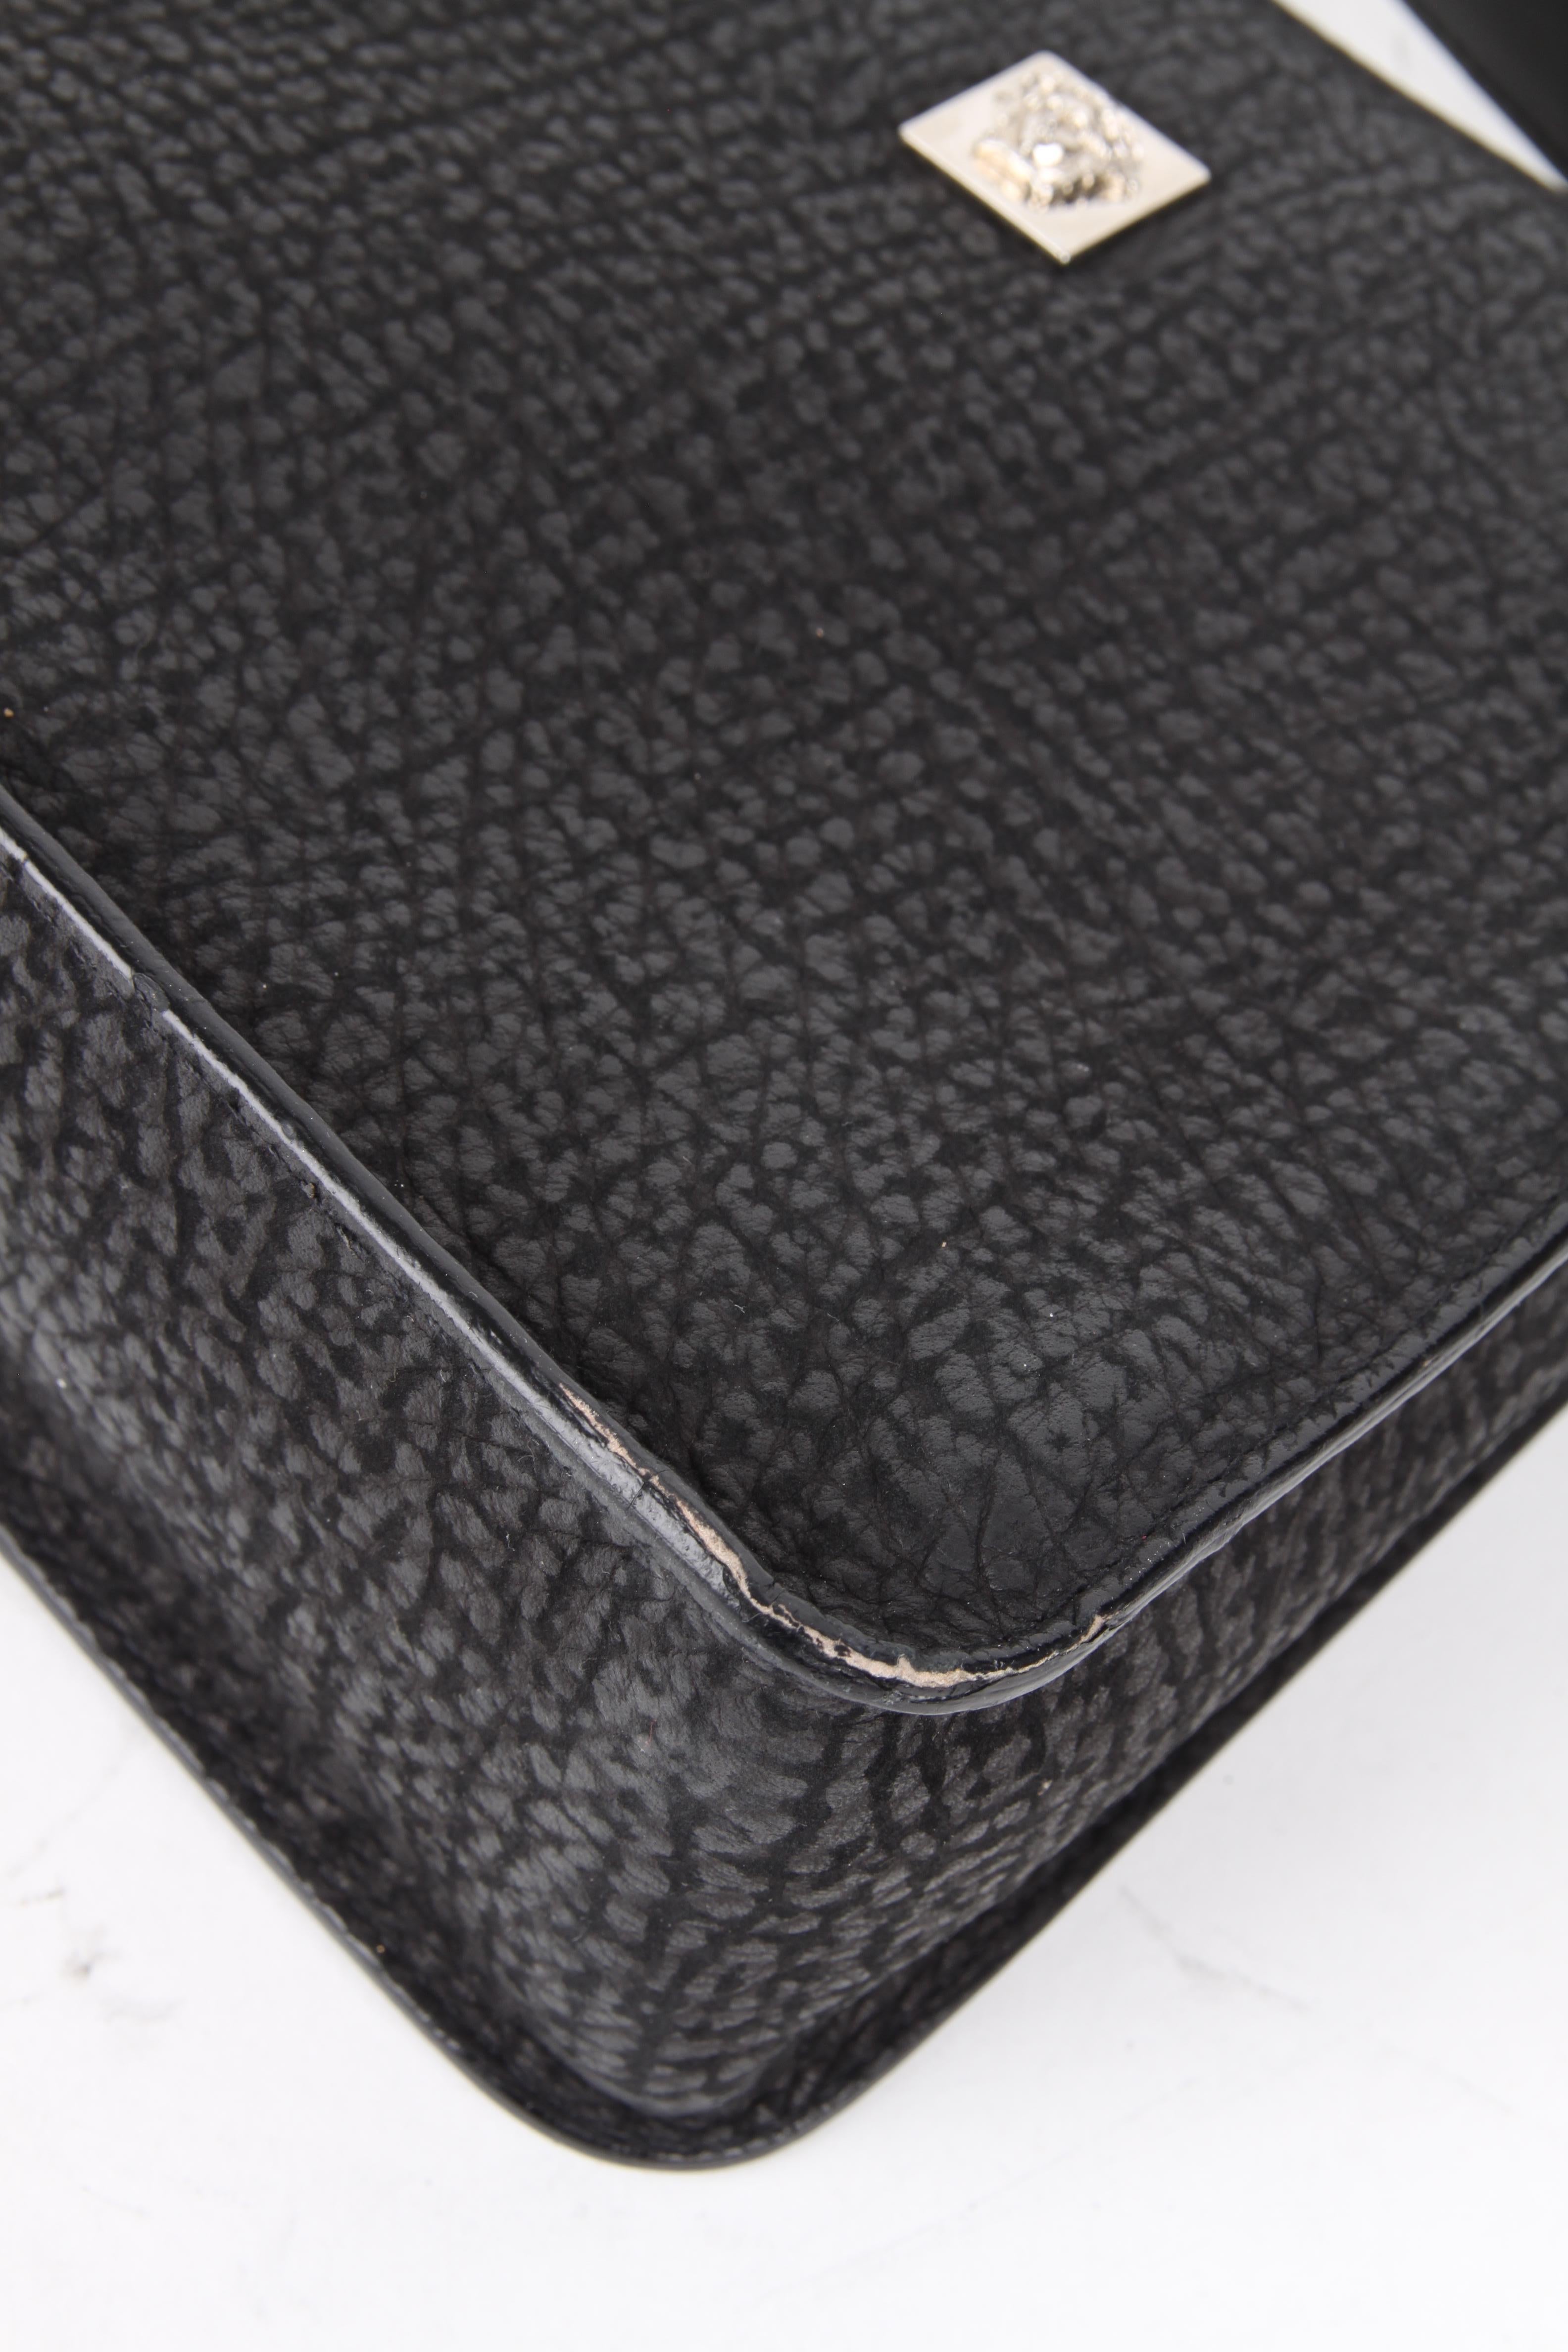 Gianni Versace Black Silver Leather Shoulder Bag For Sale 3